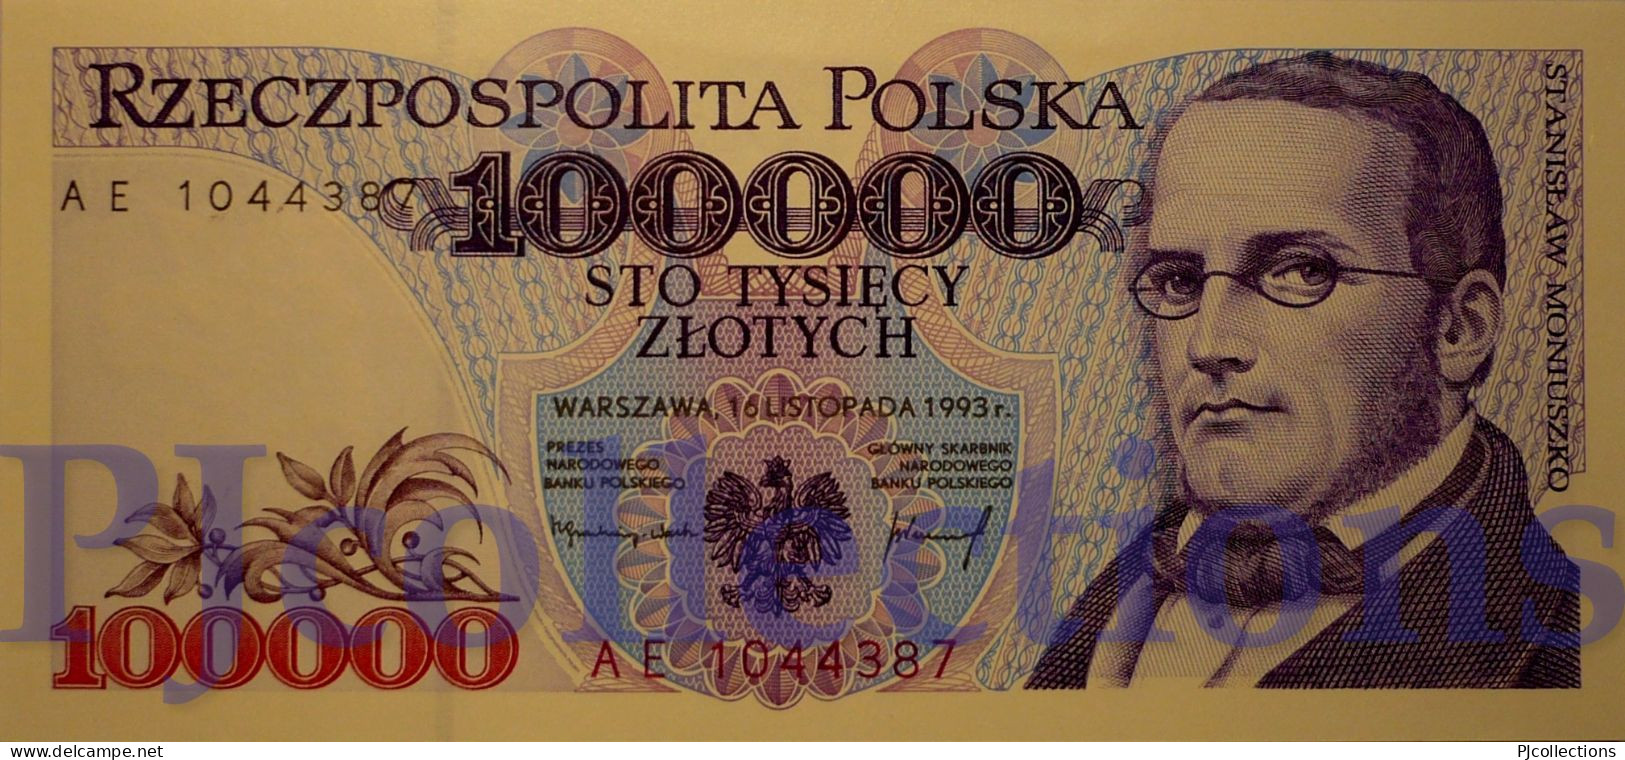 POLONIA - POLAND 100000 ZLOTYCH 1993 PICK 160a UNC PREFIX "AE" - Poland